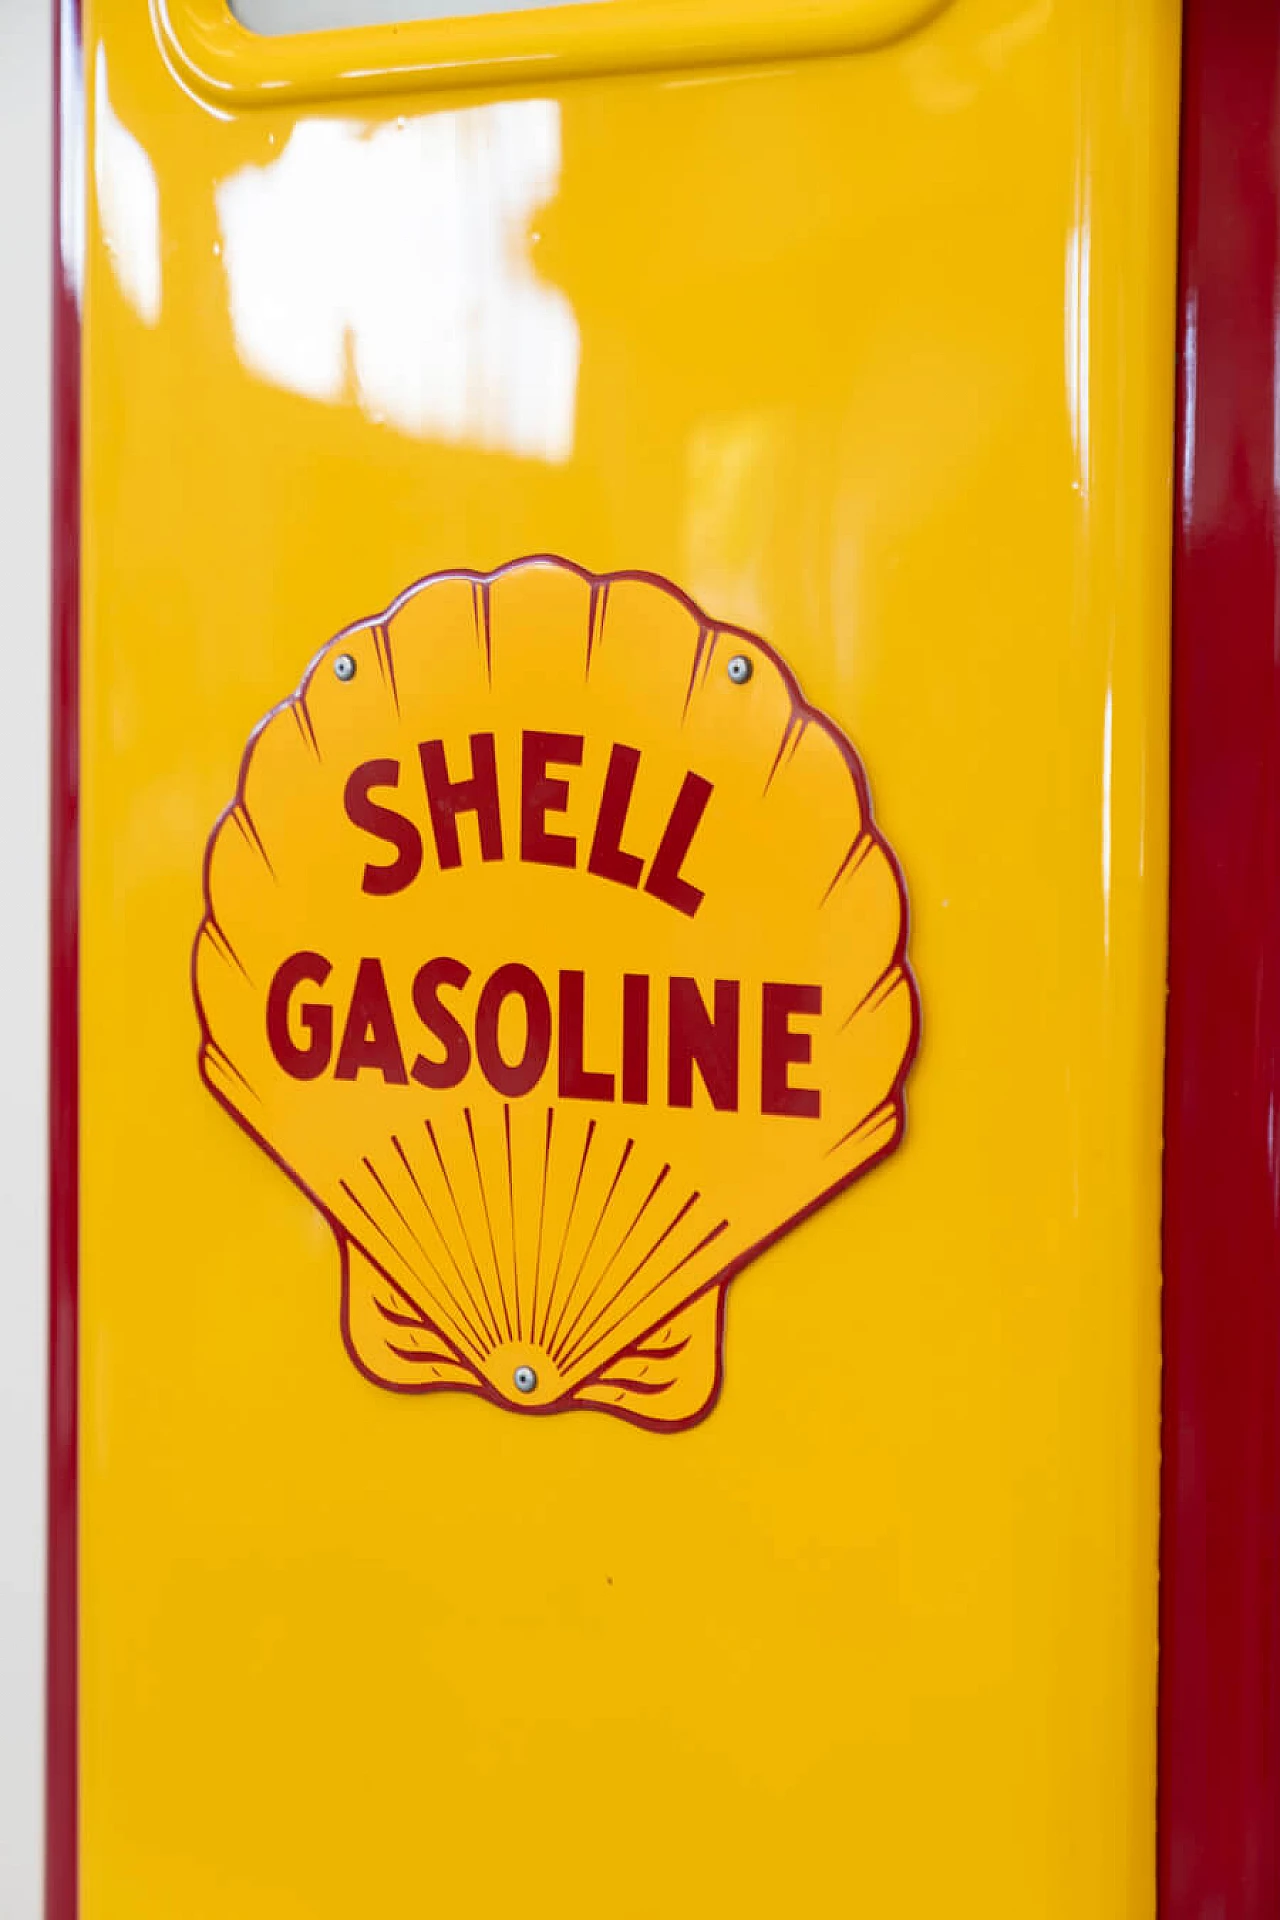 Distributore di benzina Shell, anni '50 12